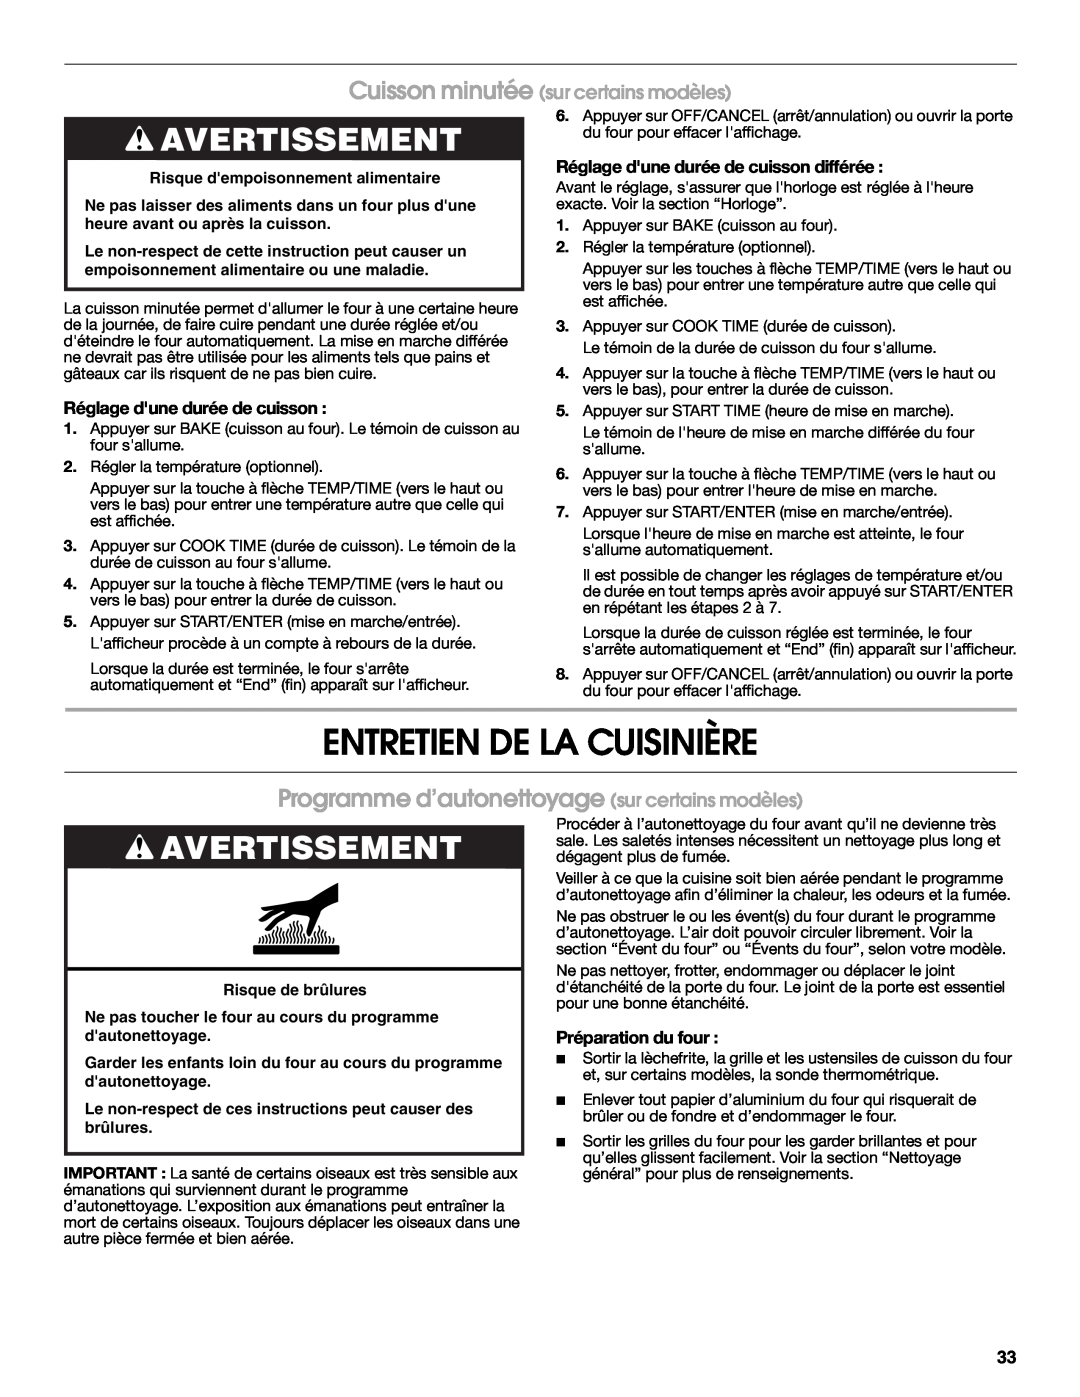 Whirlpool YIES366RS0 manual Entretien De La Cuisinière, Programme d’autonettoyage sur certains modèles, Préparation du four 